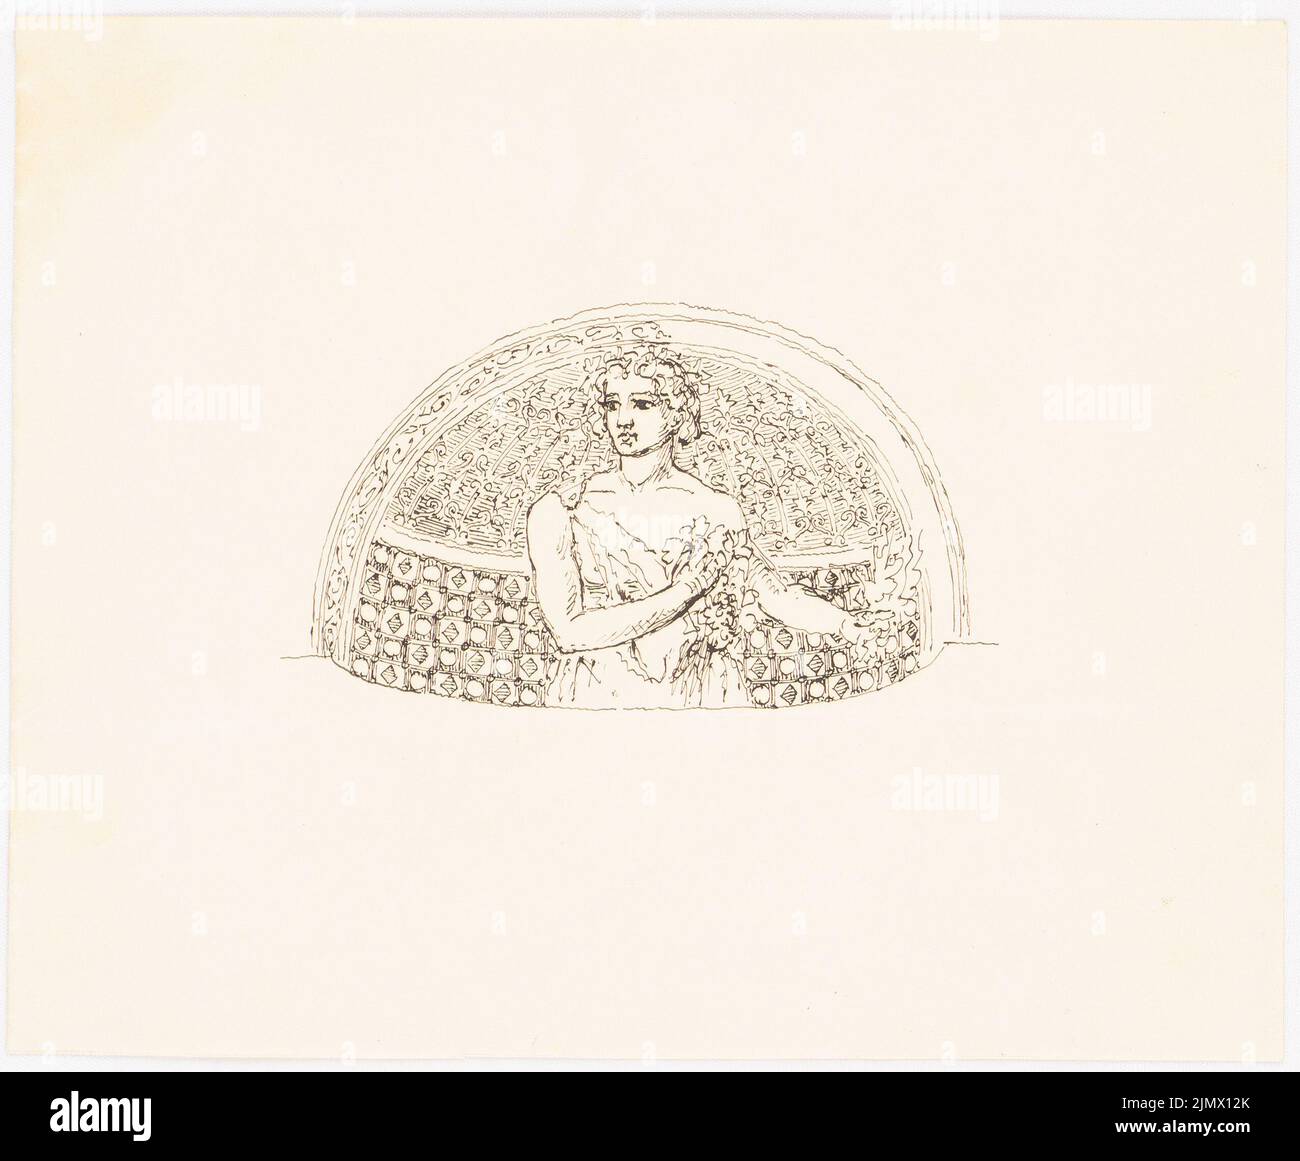 Quast Ferdinand von (1807-1877), ragazza di fronte alla lunetta (senza dat.): Mezza foto di una giovane donna in abito greco-romano, fiore (floragest, allegoria estiva), di fronte alla lunetta ornata (dipinto uno. Inchiostro su carta, 17,8 x 21,6 cm (compresi i bordi di scansione) Quast Ferdinand von (1807-1877): Mädchen vor Lünette Foto Stock